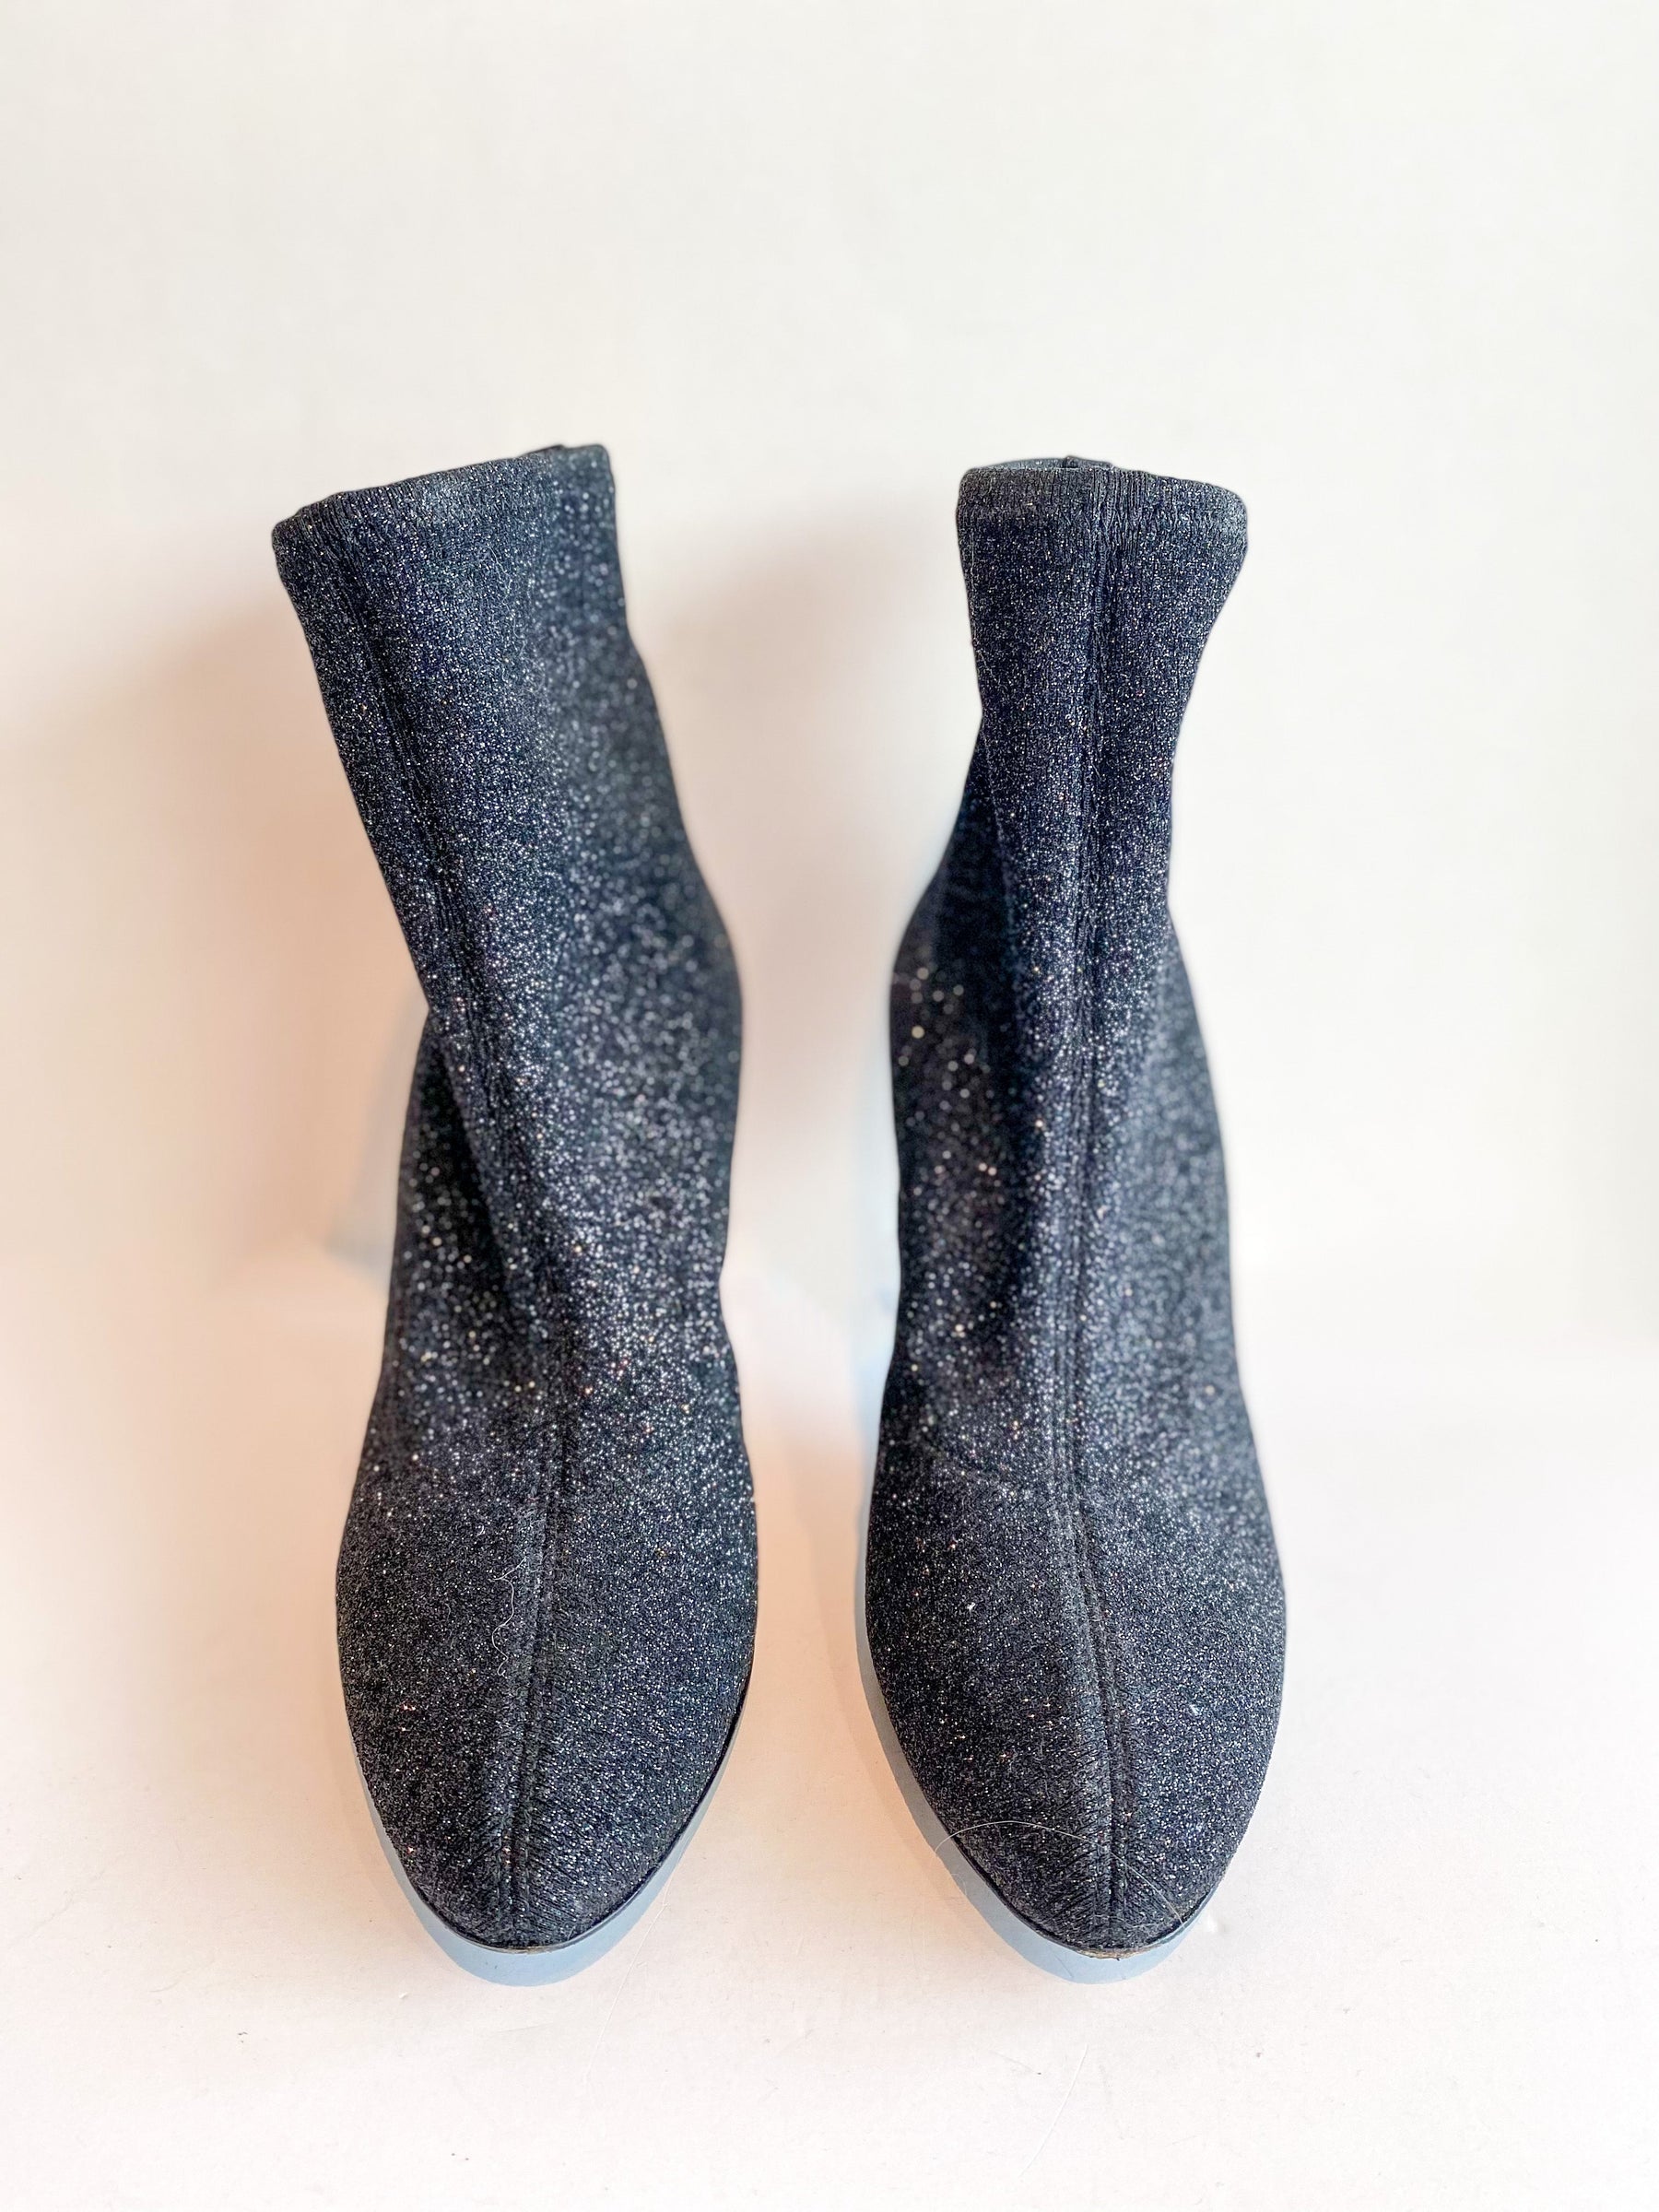 Giuseppe Zanotti Celeste Sock Boot Black Glitter